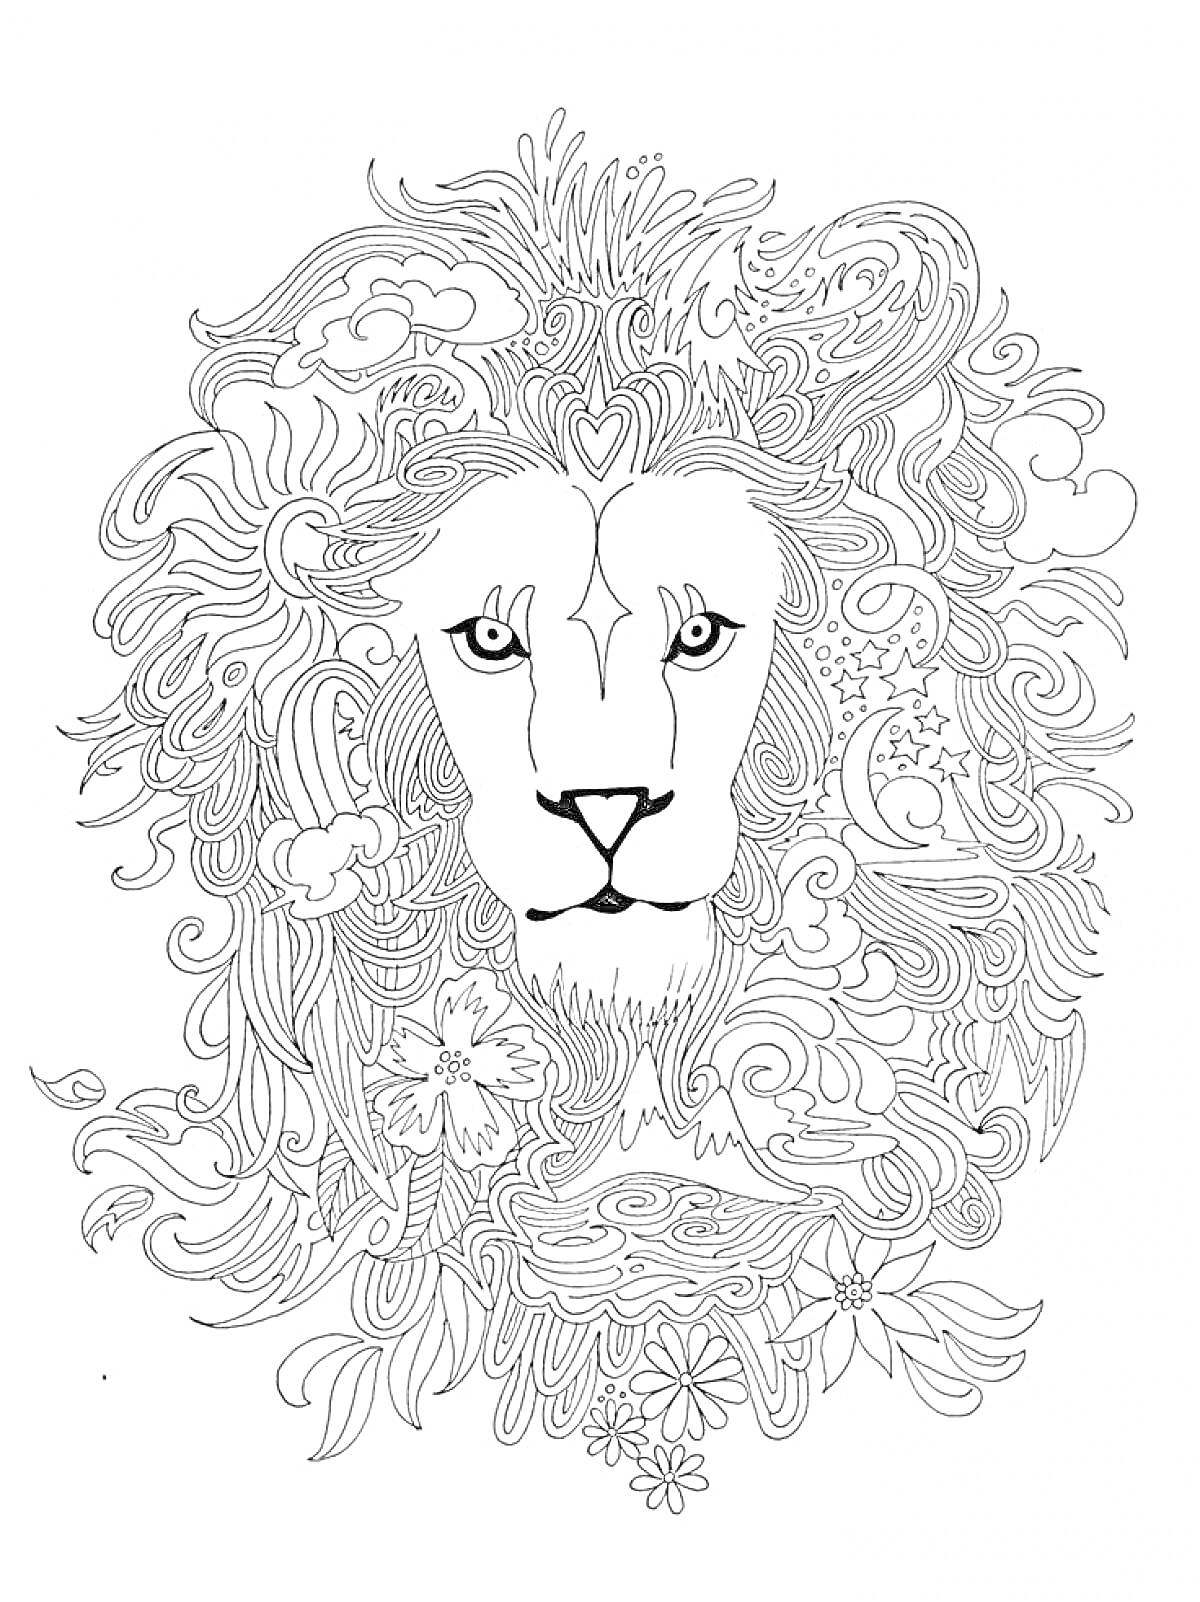 Раскраска Лев с декоративной гривой, состоящей из волн, цветков, облаков и узоров